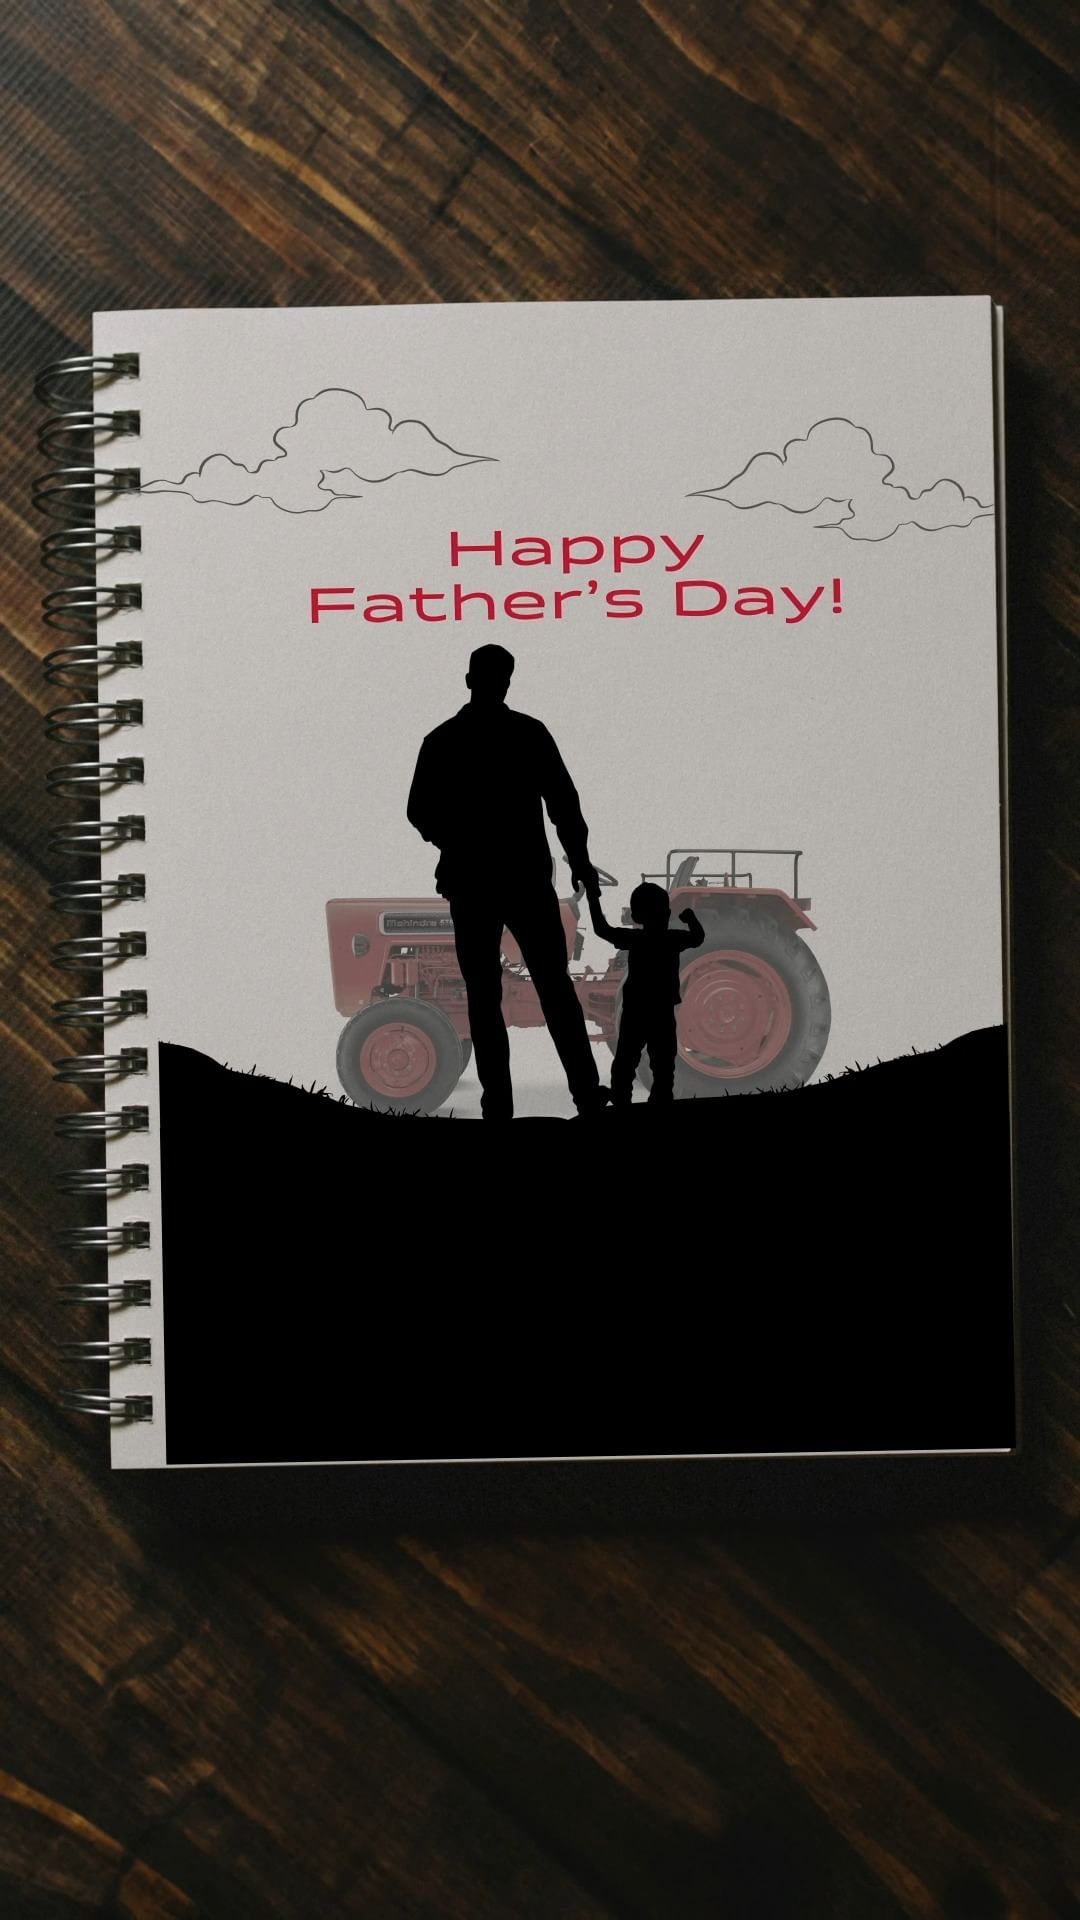 बाबा से बड़ा जादूगर कौन? इसका जवाब जिसको पता है वो बस एक पिता है! ♥️
#FathersDay2024 #MahindraTractors #Farmer #Tractor